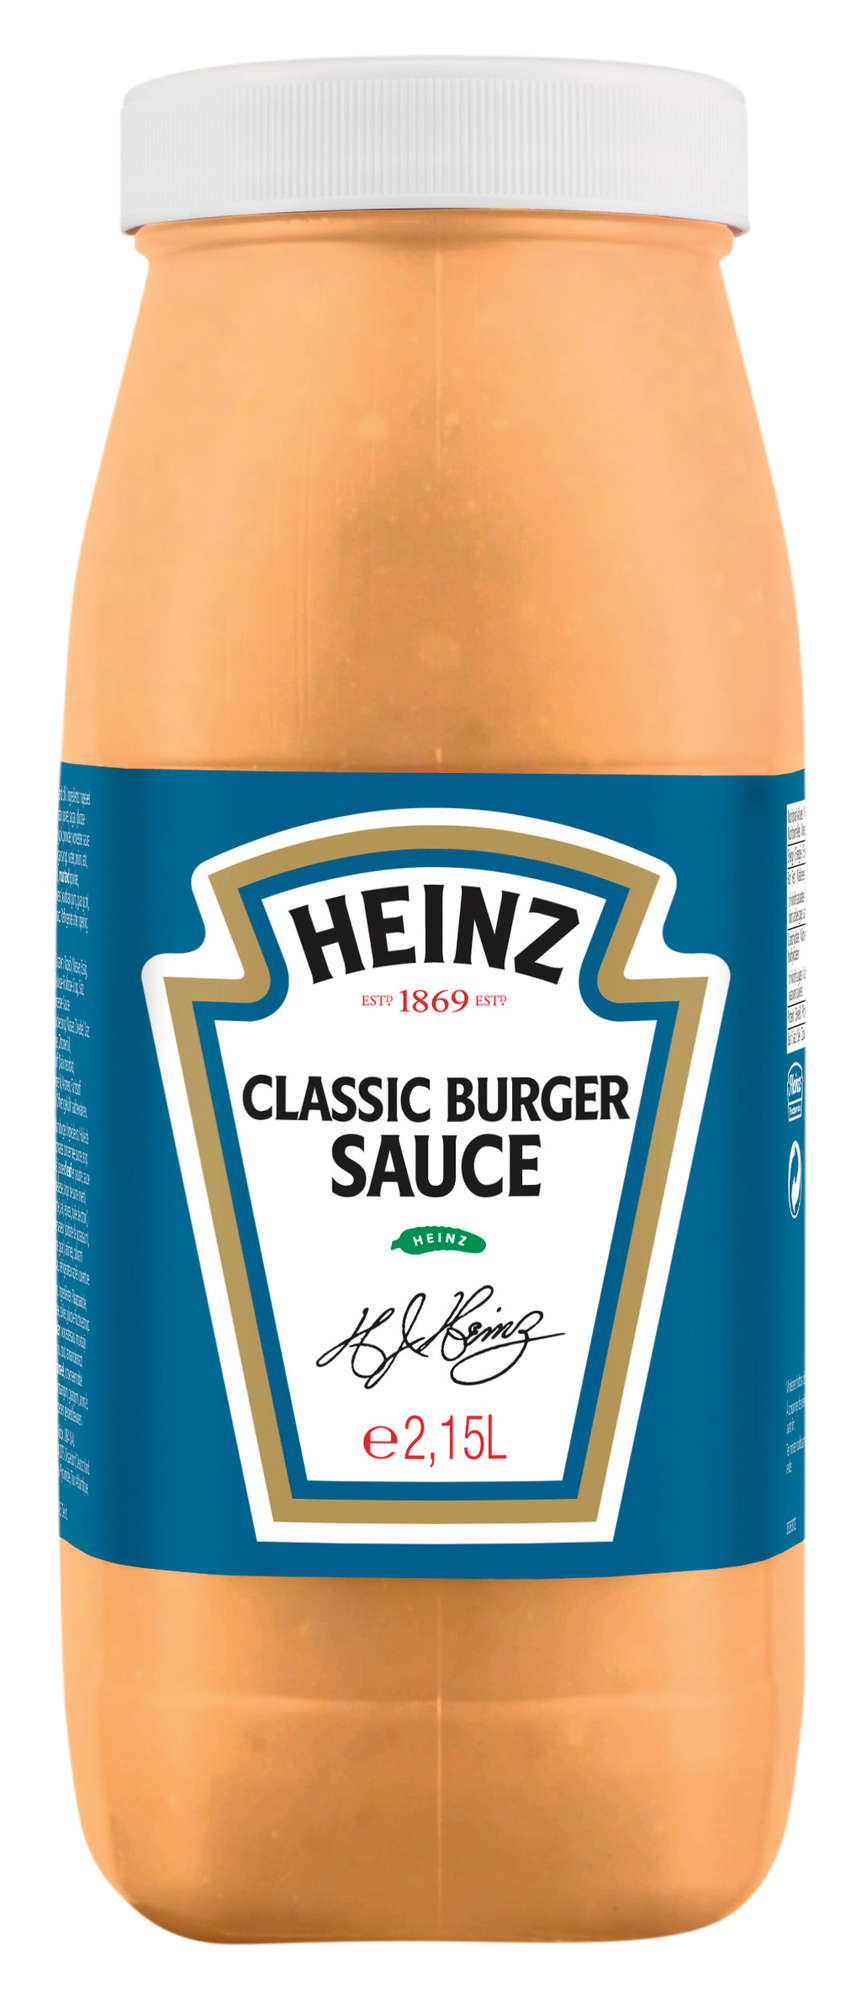 Classic Burger Sauce 2150ml